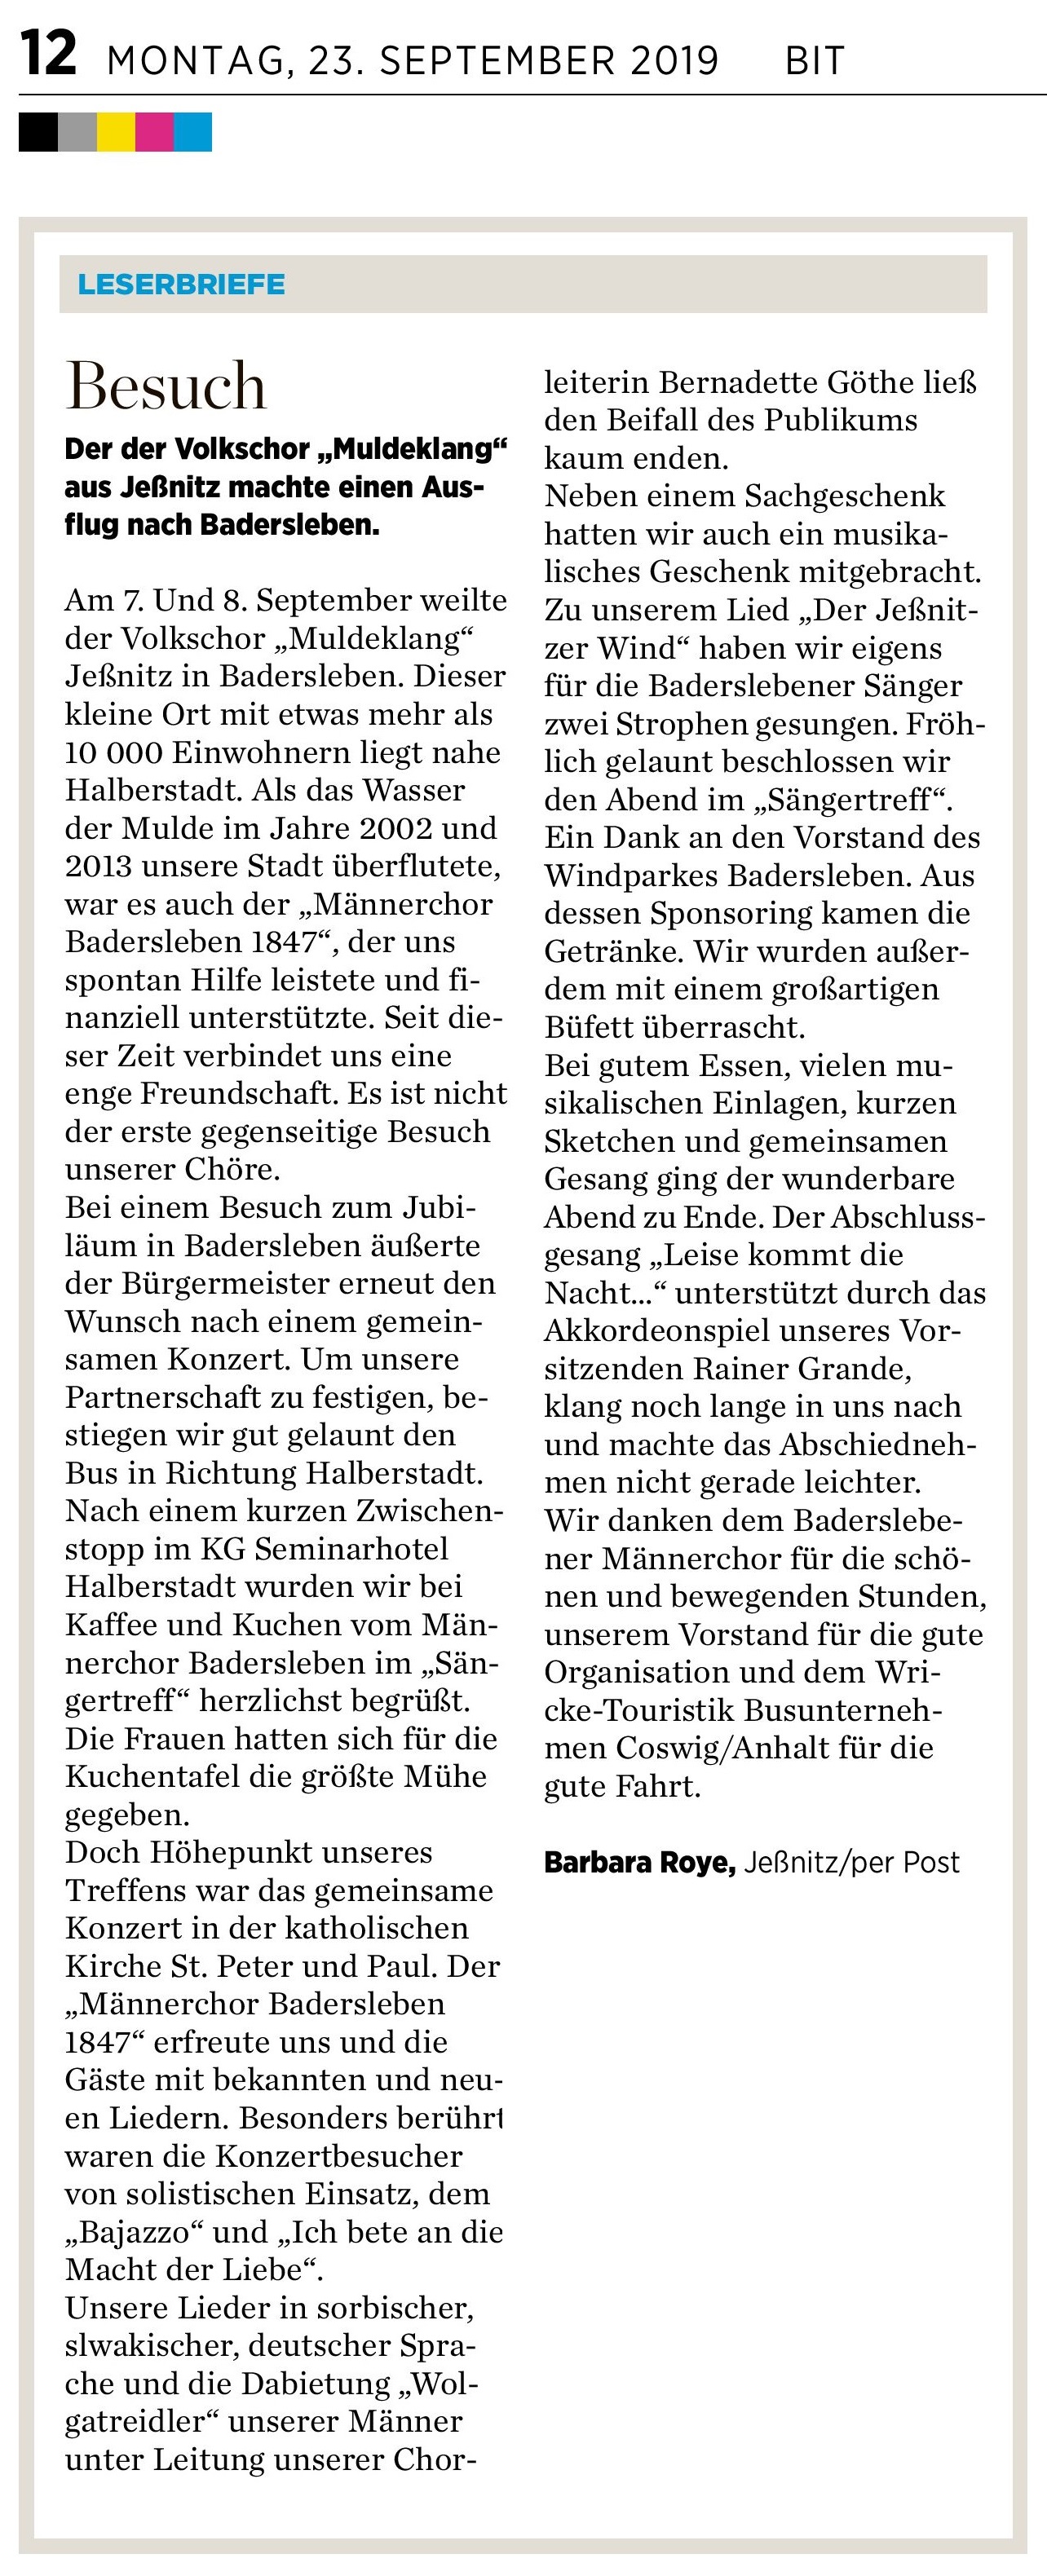 Leserbrief zur Chorfahrt nach Badersleben in der Mitteldeutschen Zeitung